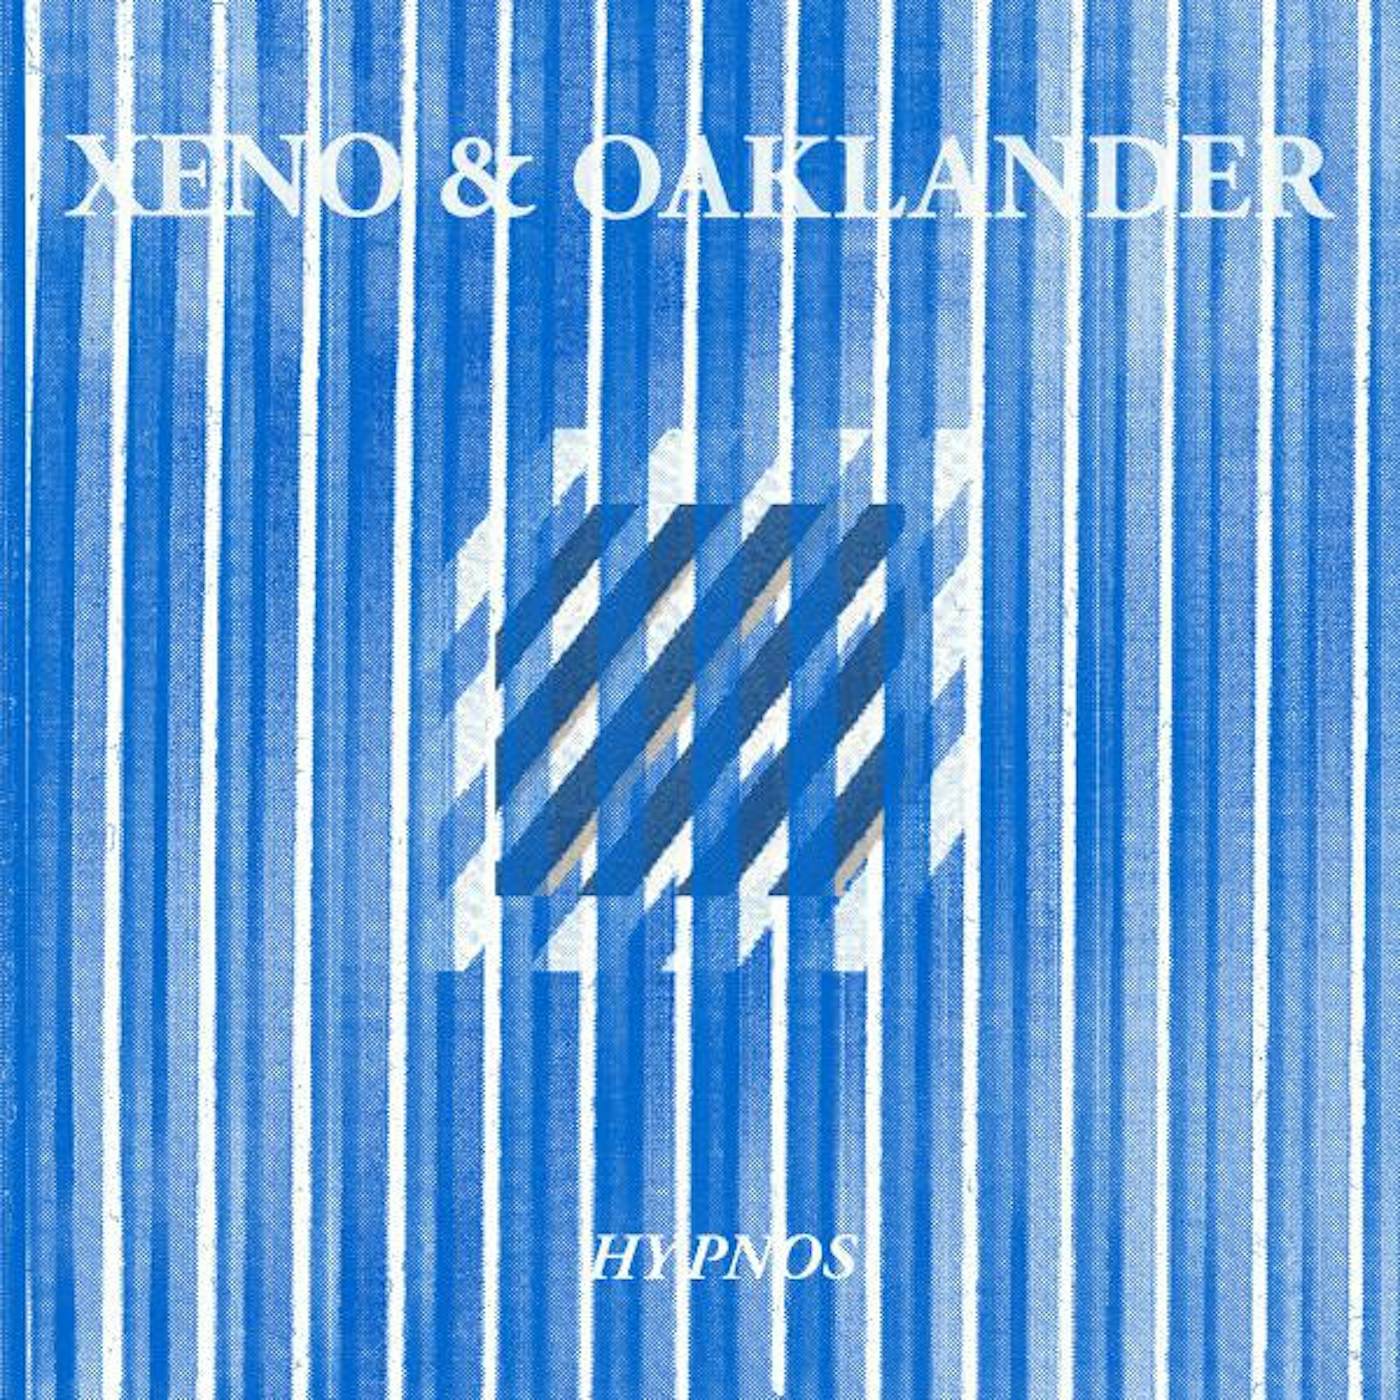 Xeno & Oaklander HYPNOS (VIOLET VINYL) Vinyl Record